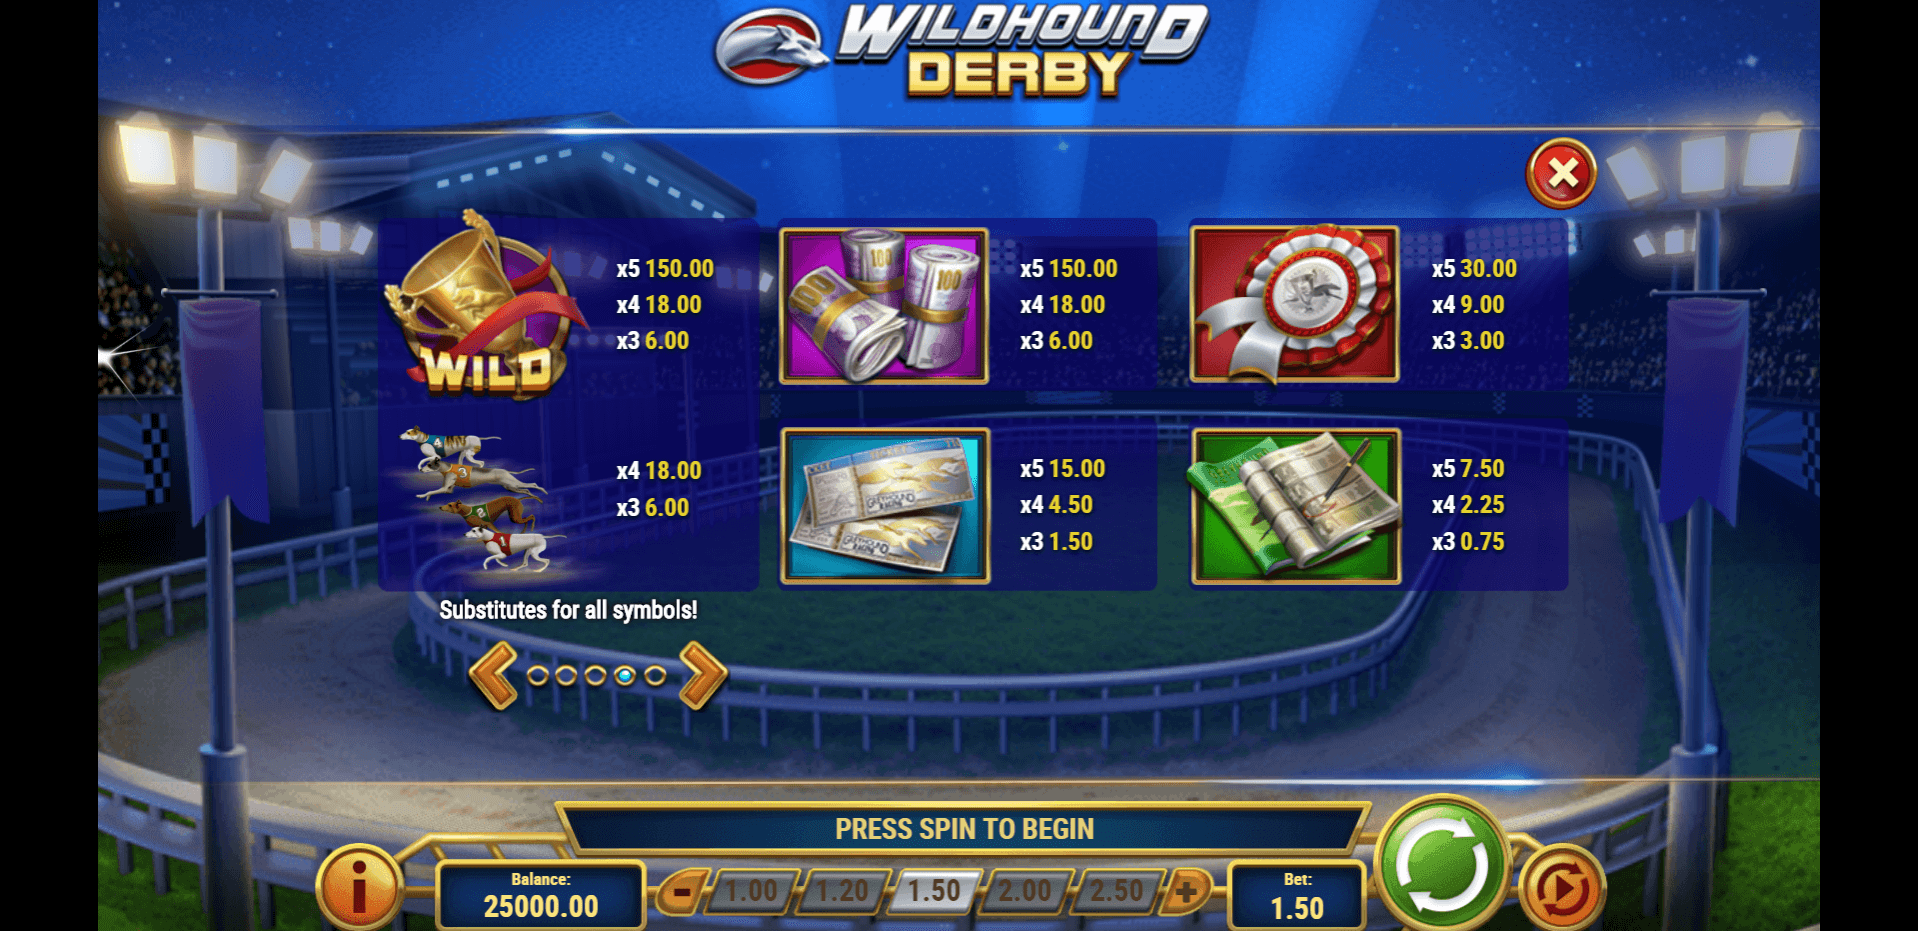 wildhound derby slot machine detail image 3